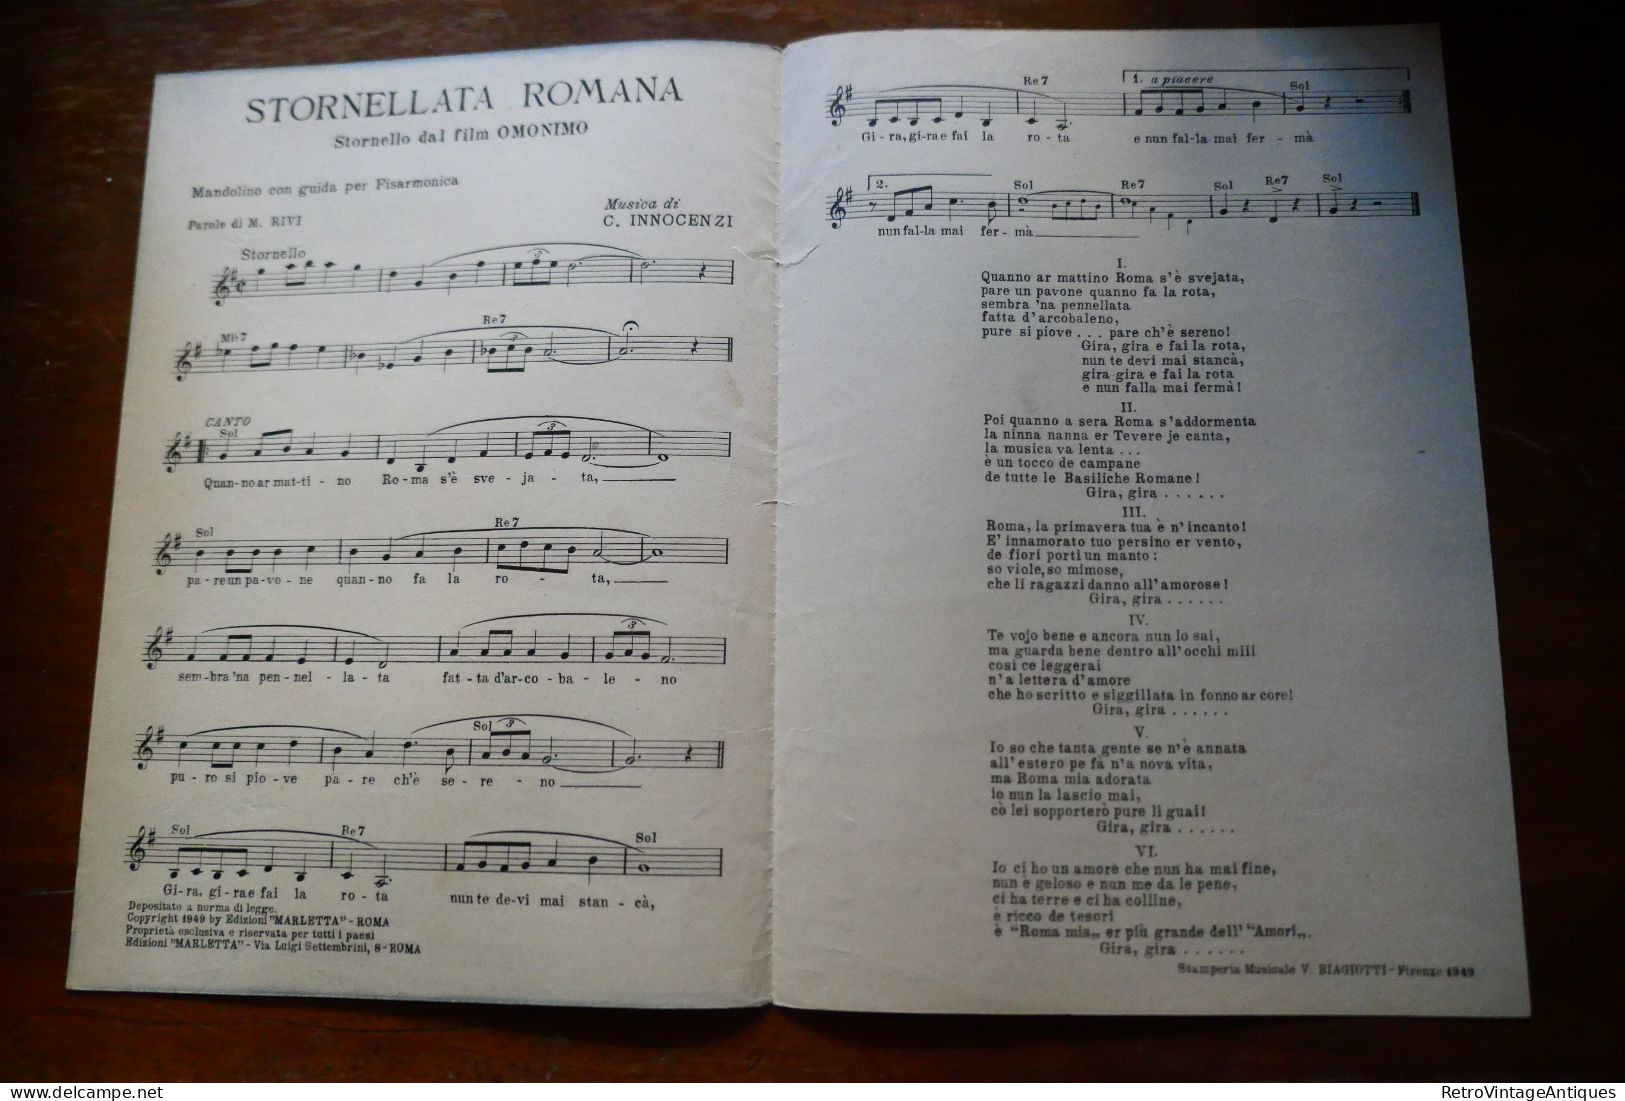 Stornellata Romana Giorgio Graziosi Marcella Rivi Carlo Innocenzi Marletta Partitura Muzicala Veche Romania - Canto (solo)